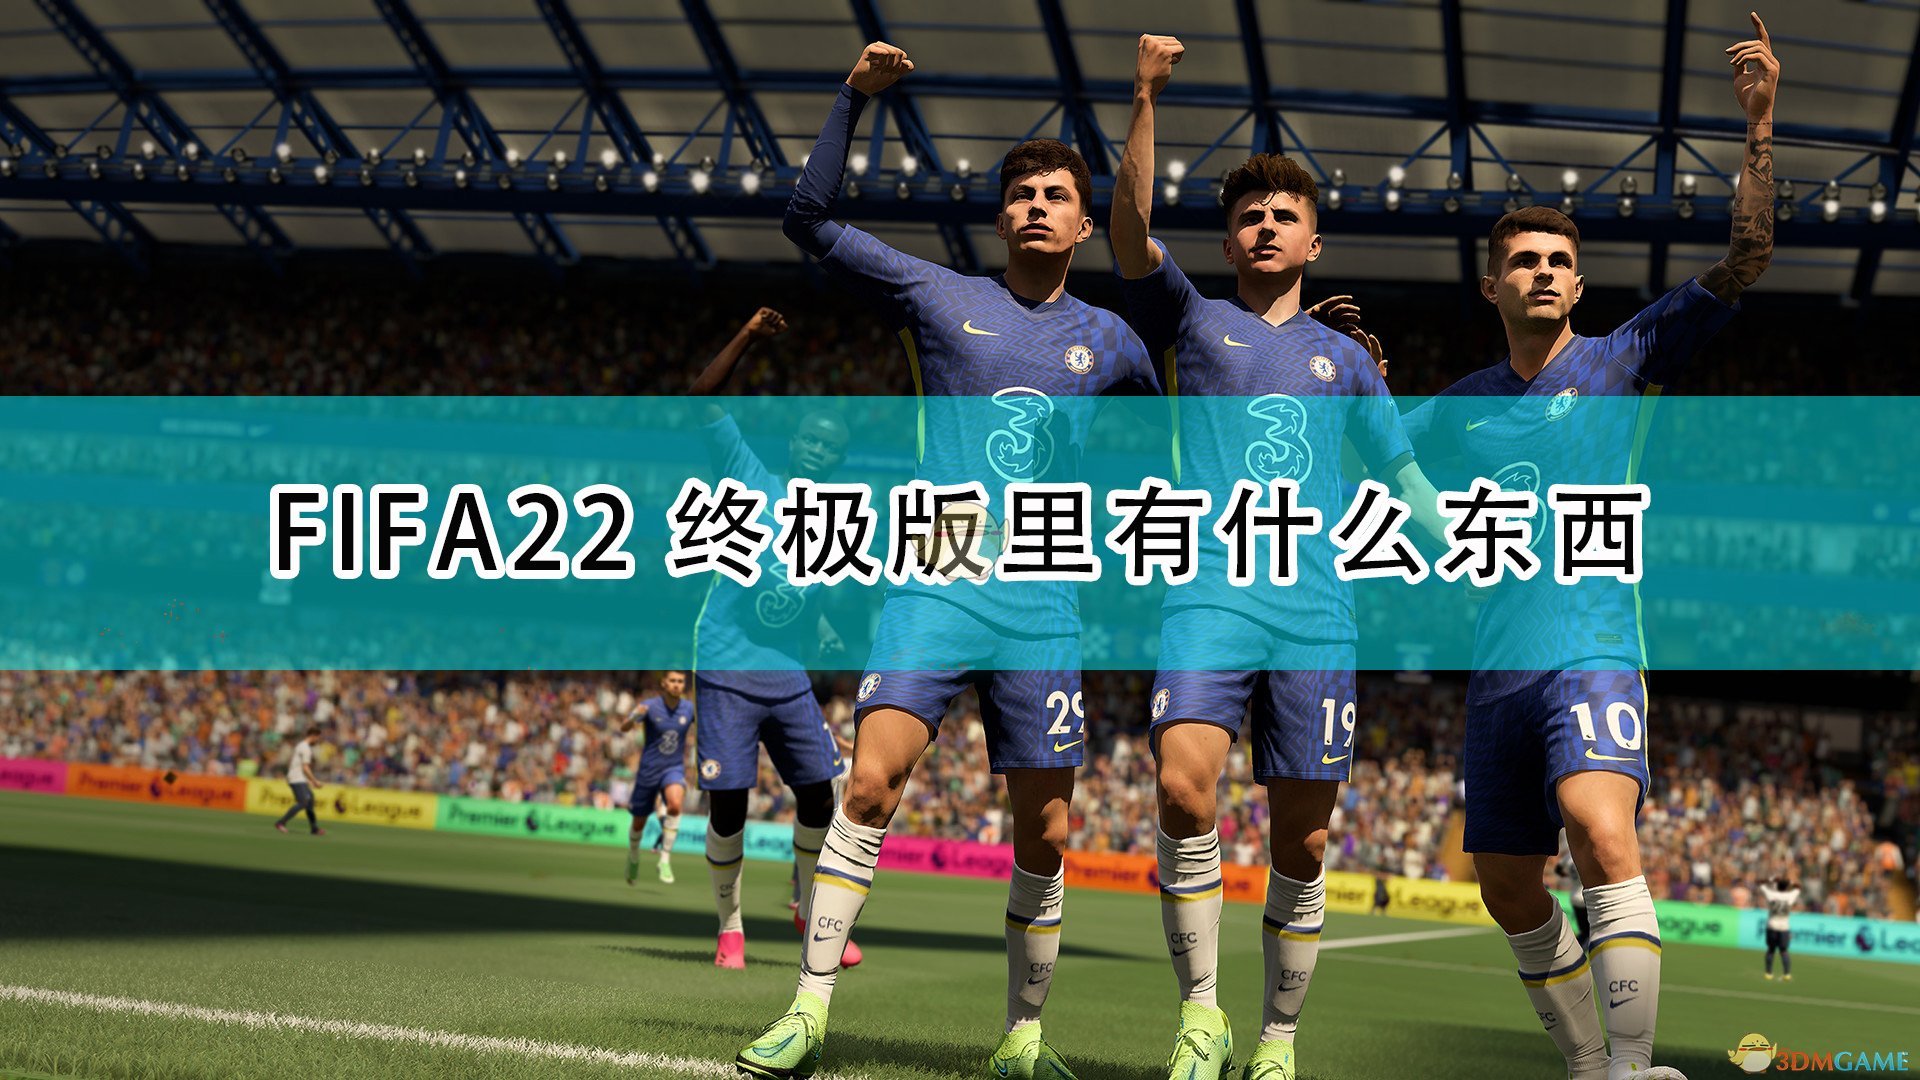 《FIFA 22》終極版及限時獎勵內容介紹